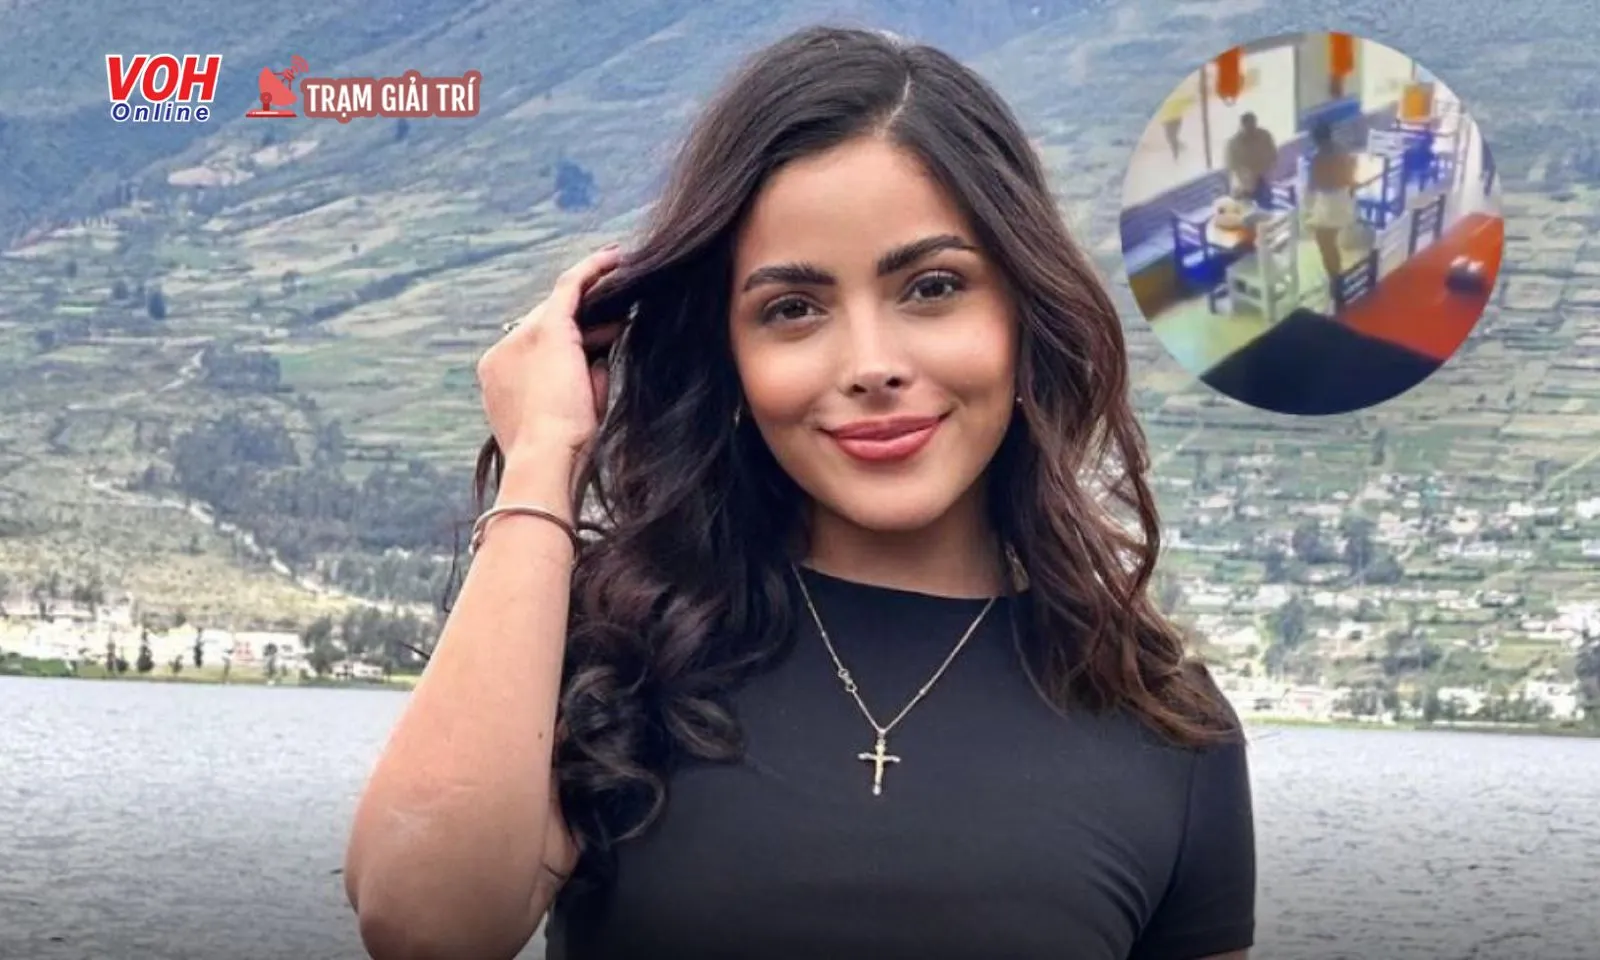 Góc khuất phía sau vụ thí sinh Hoa hậu Ecuador bị sát hại ở tuổi 23